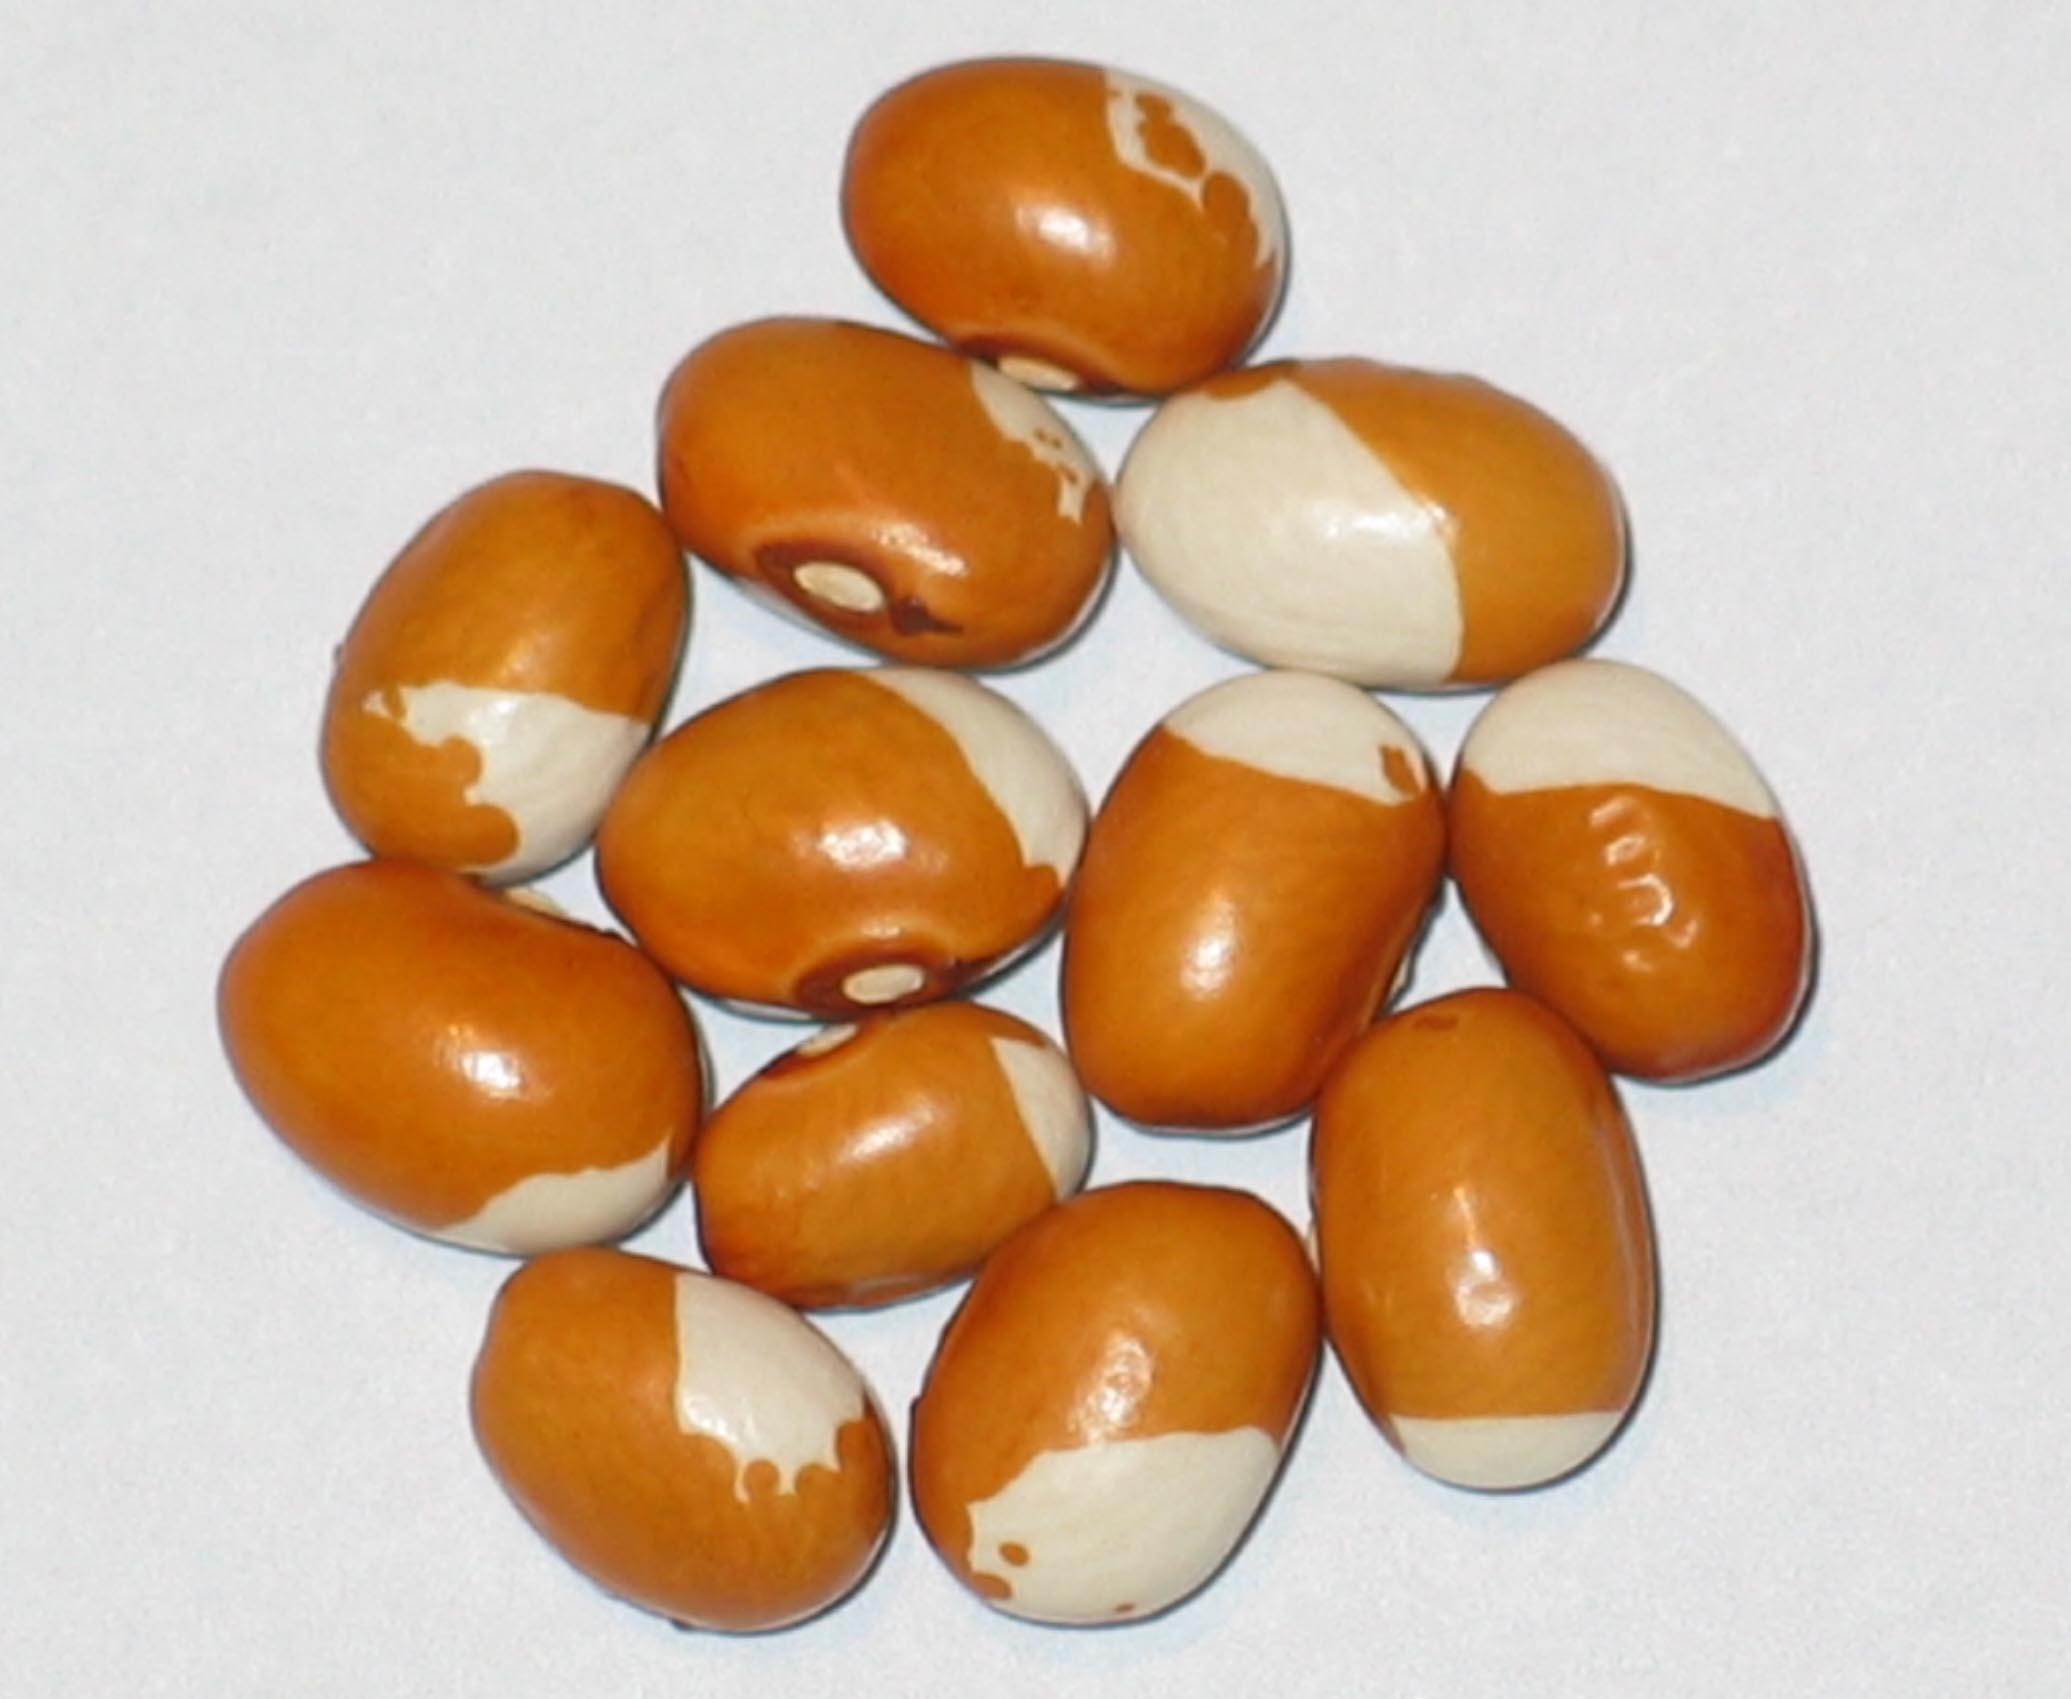 image of Goldener Regen beans